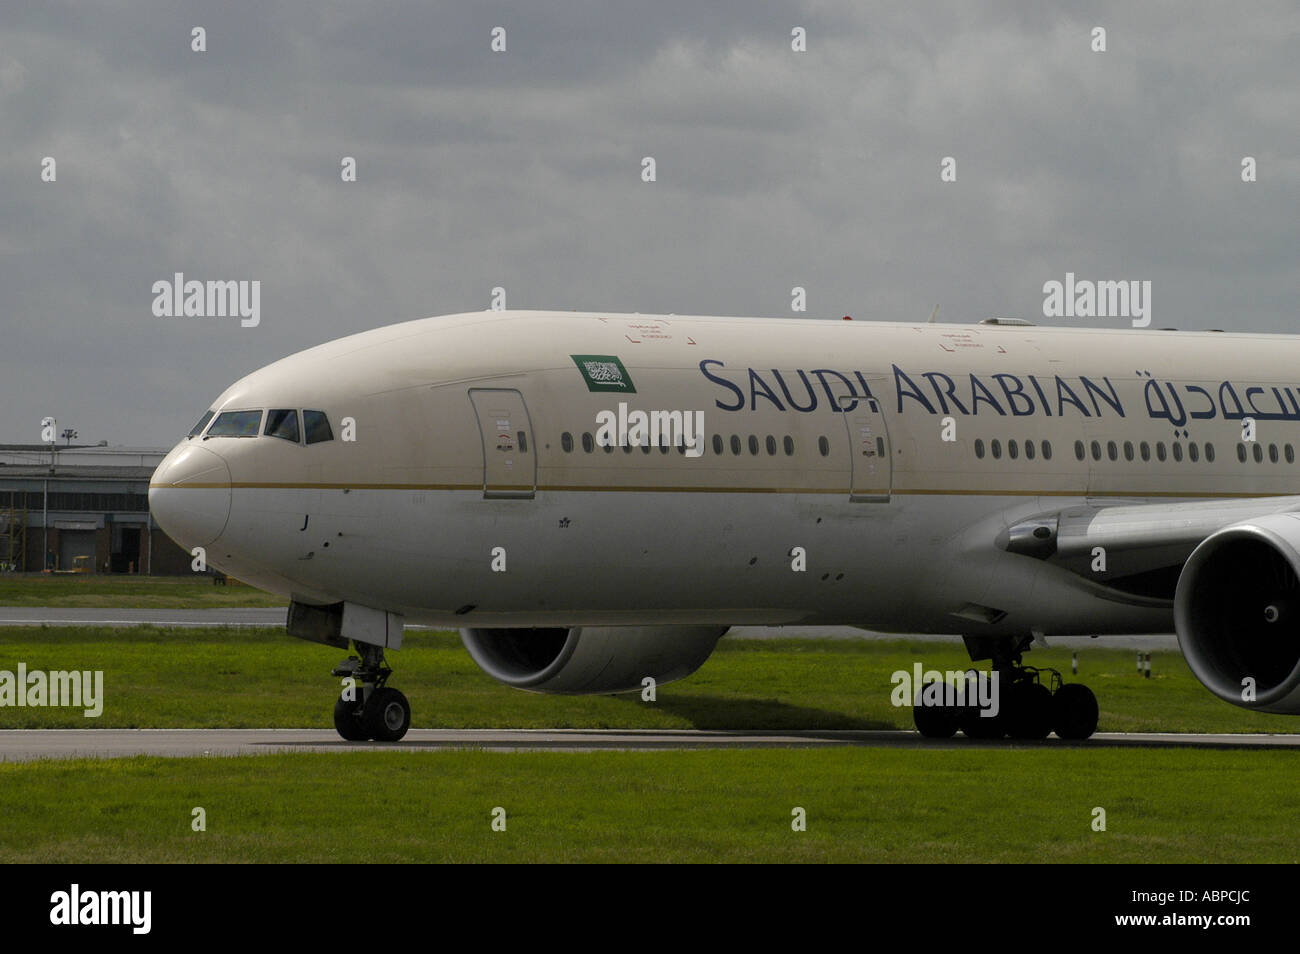 Saudi-Arabischer Verkehrsflugzeug des Rollens am Heathrow Airport London Bild von Andrew Hasson 18. Mai 2006 Stockfoto